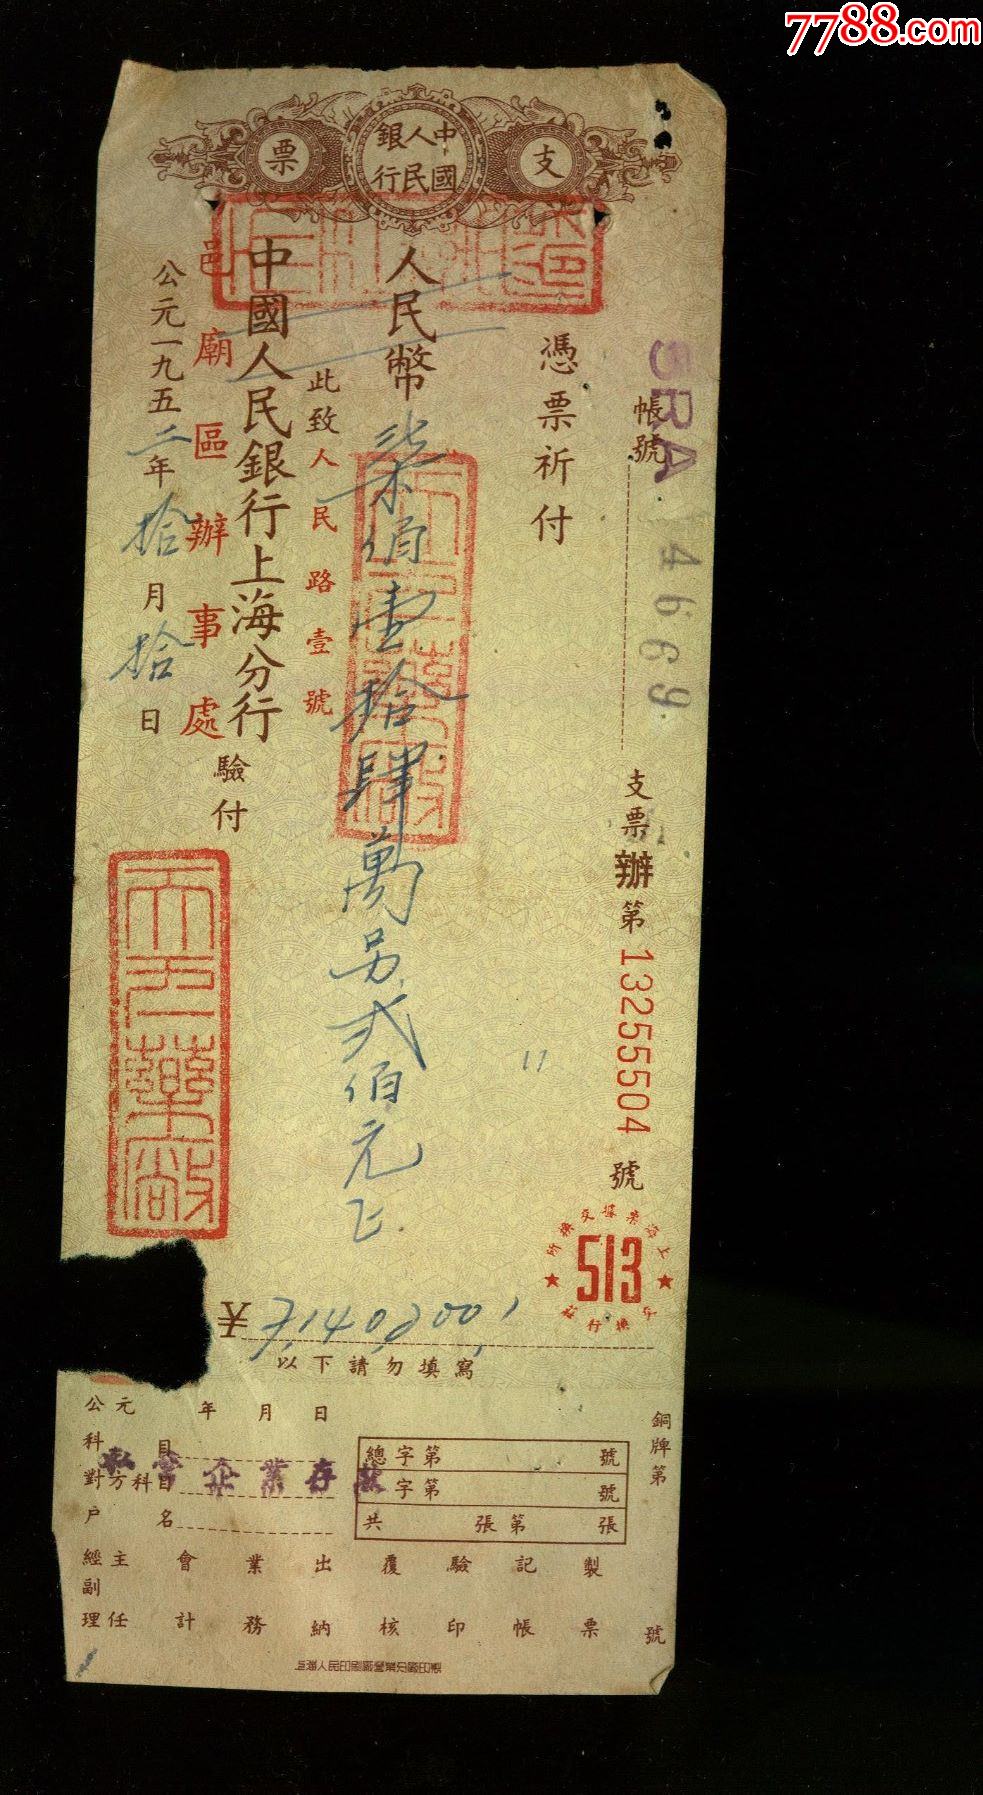 中国人民银行上海分行支票